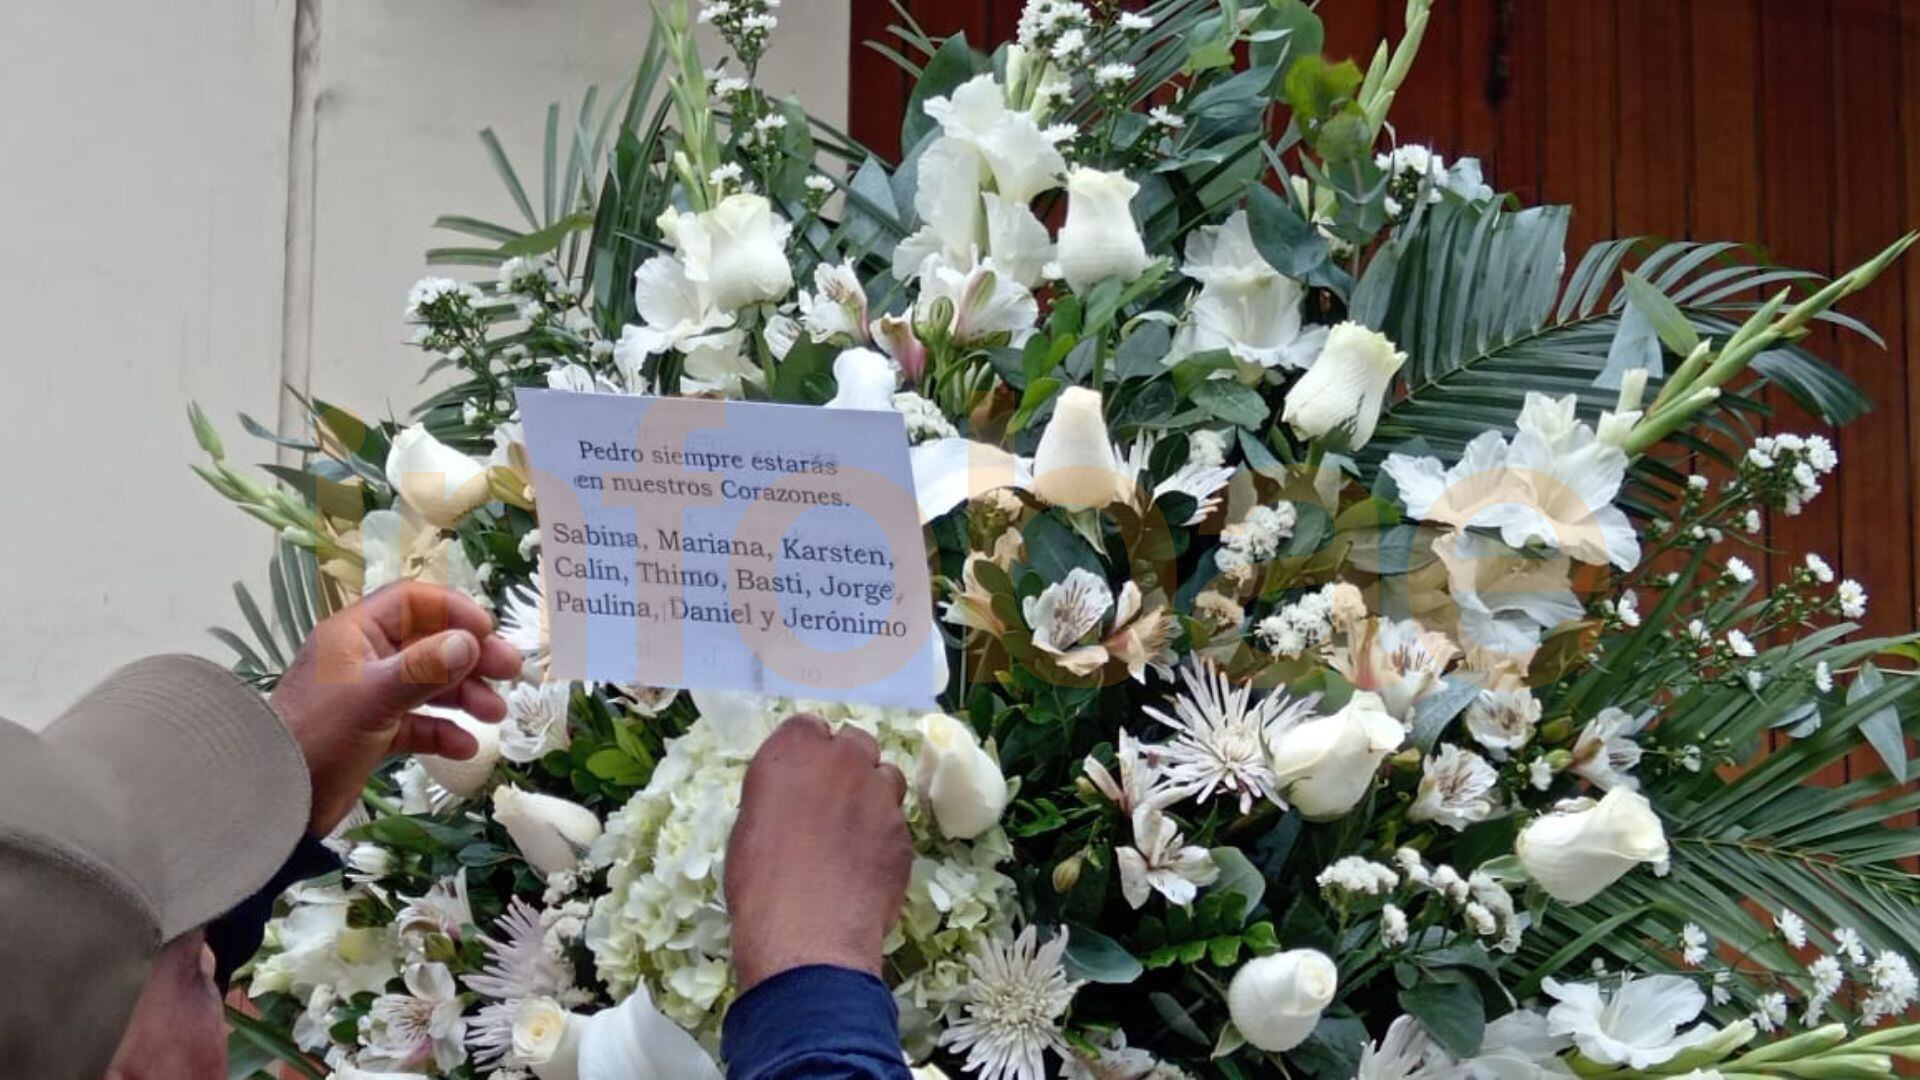 Arreglos florales con emotivas dedicatorias para el Velorio de Pedro Suárez Vértiz en el velatorio de la iglesia Vírgen de Fátima de Miraflores | Infobae / Paula Elizalde